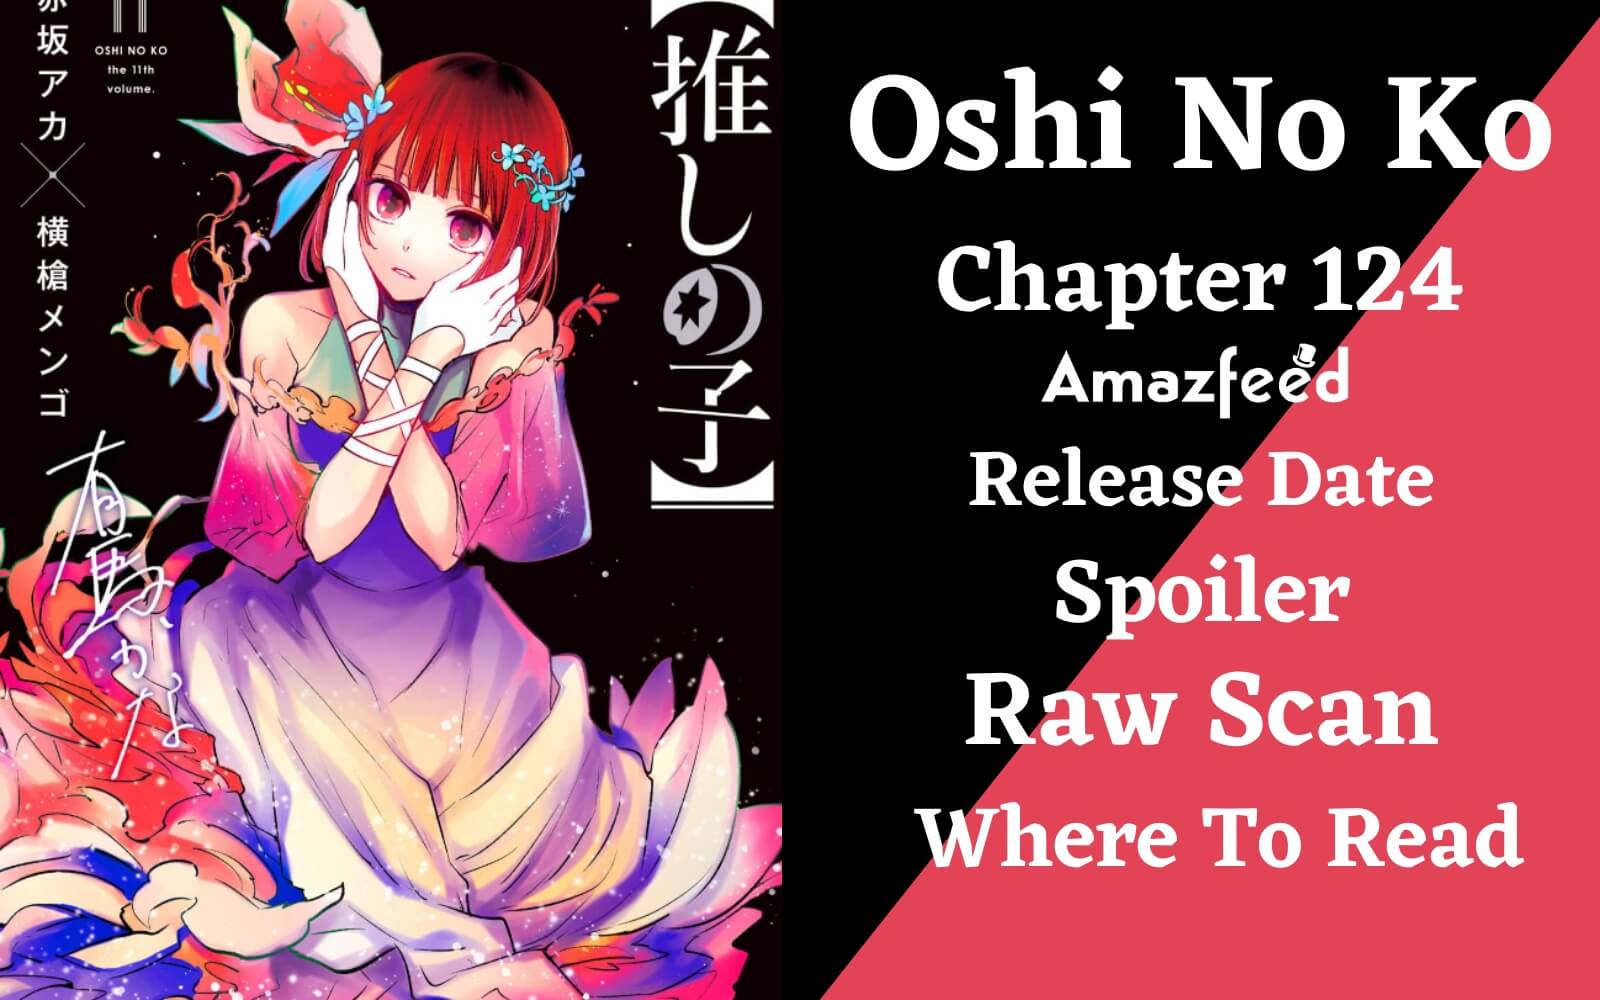 Oshi no Ko chapter 124: Oshi no Ko Chapter 124: Release date, time